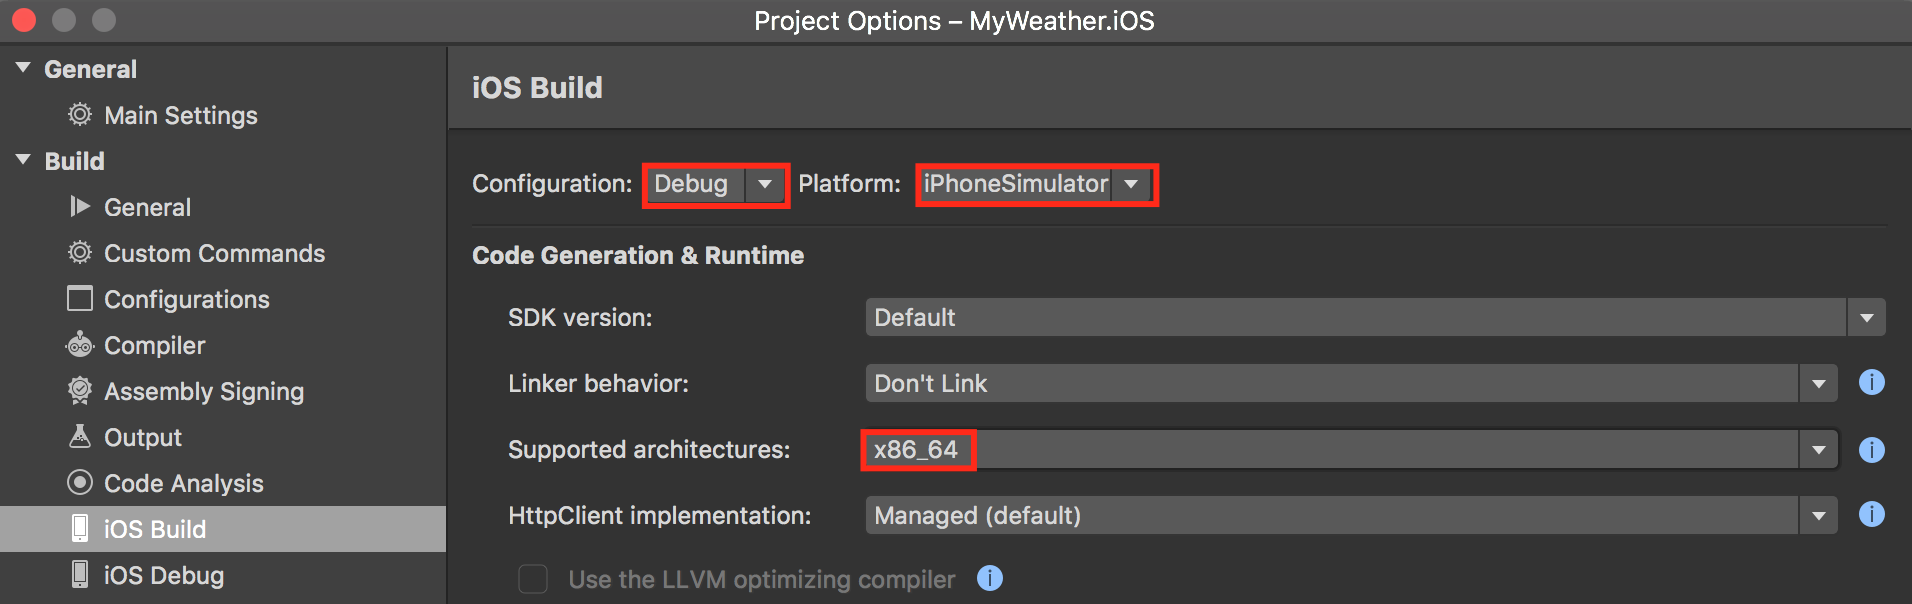 Definir x86_64 em Arquiteturas com Suporte para configuração do iPhoneSimulator no aplicativo Xamarin.iOS